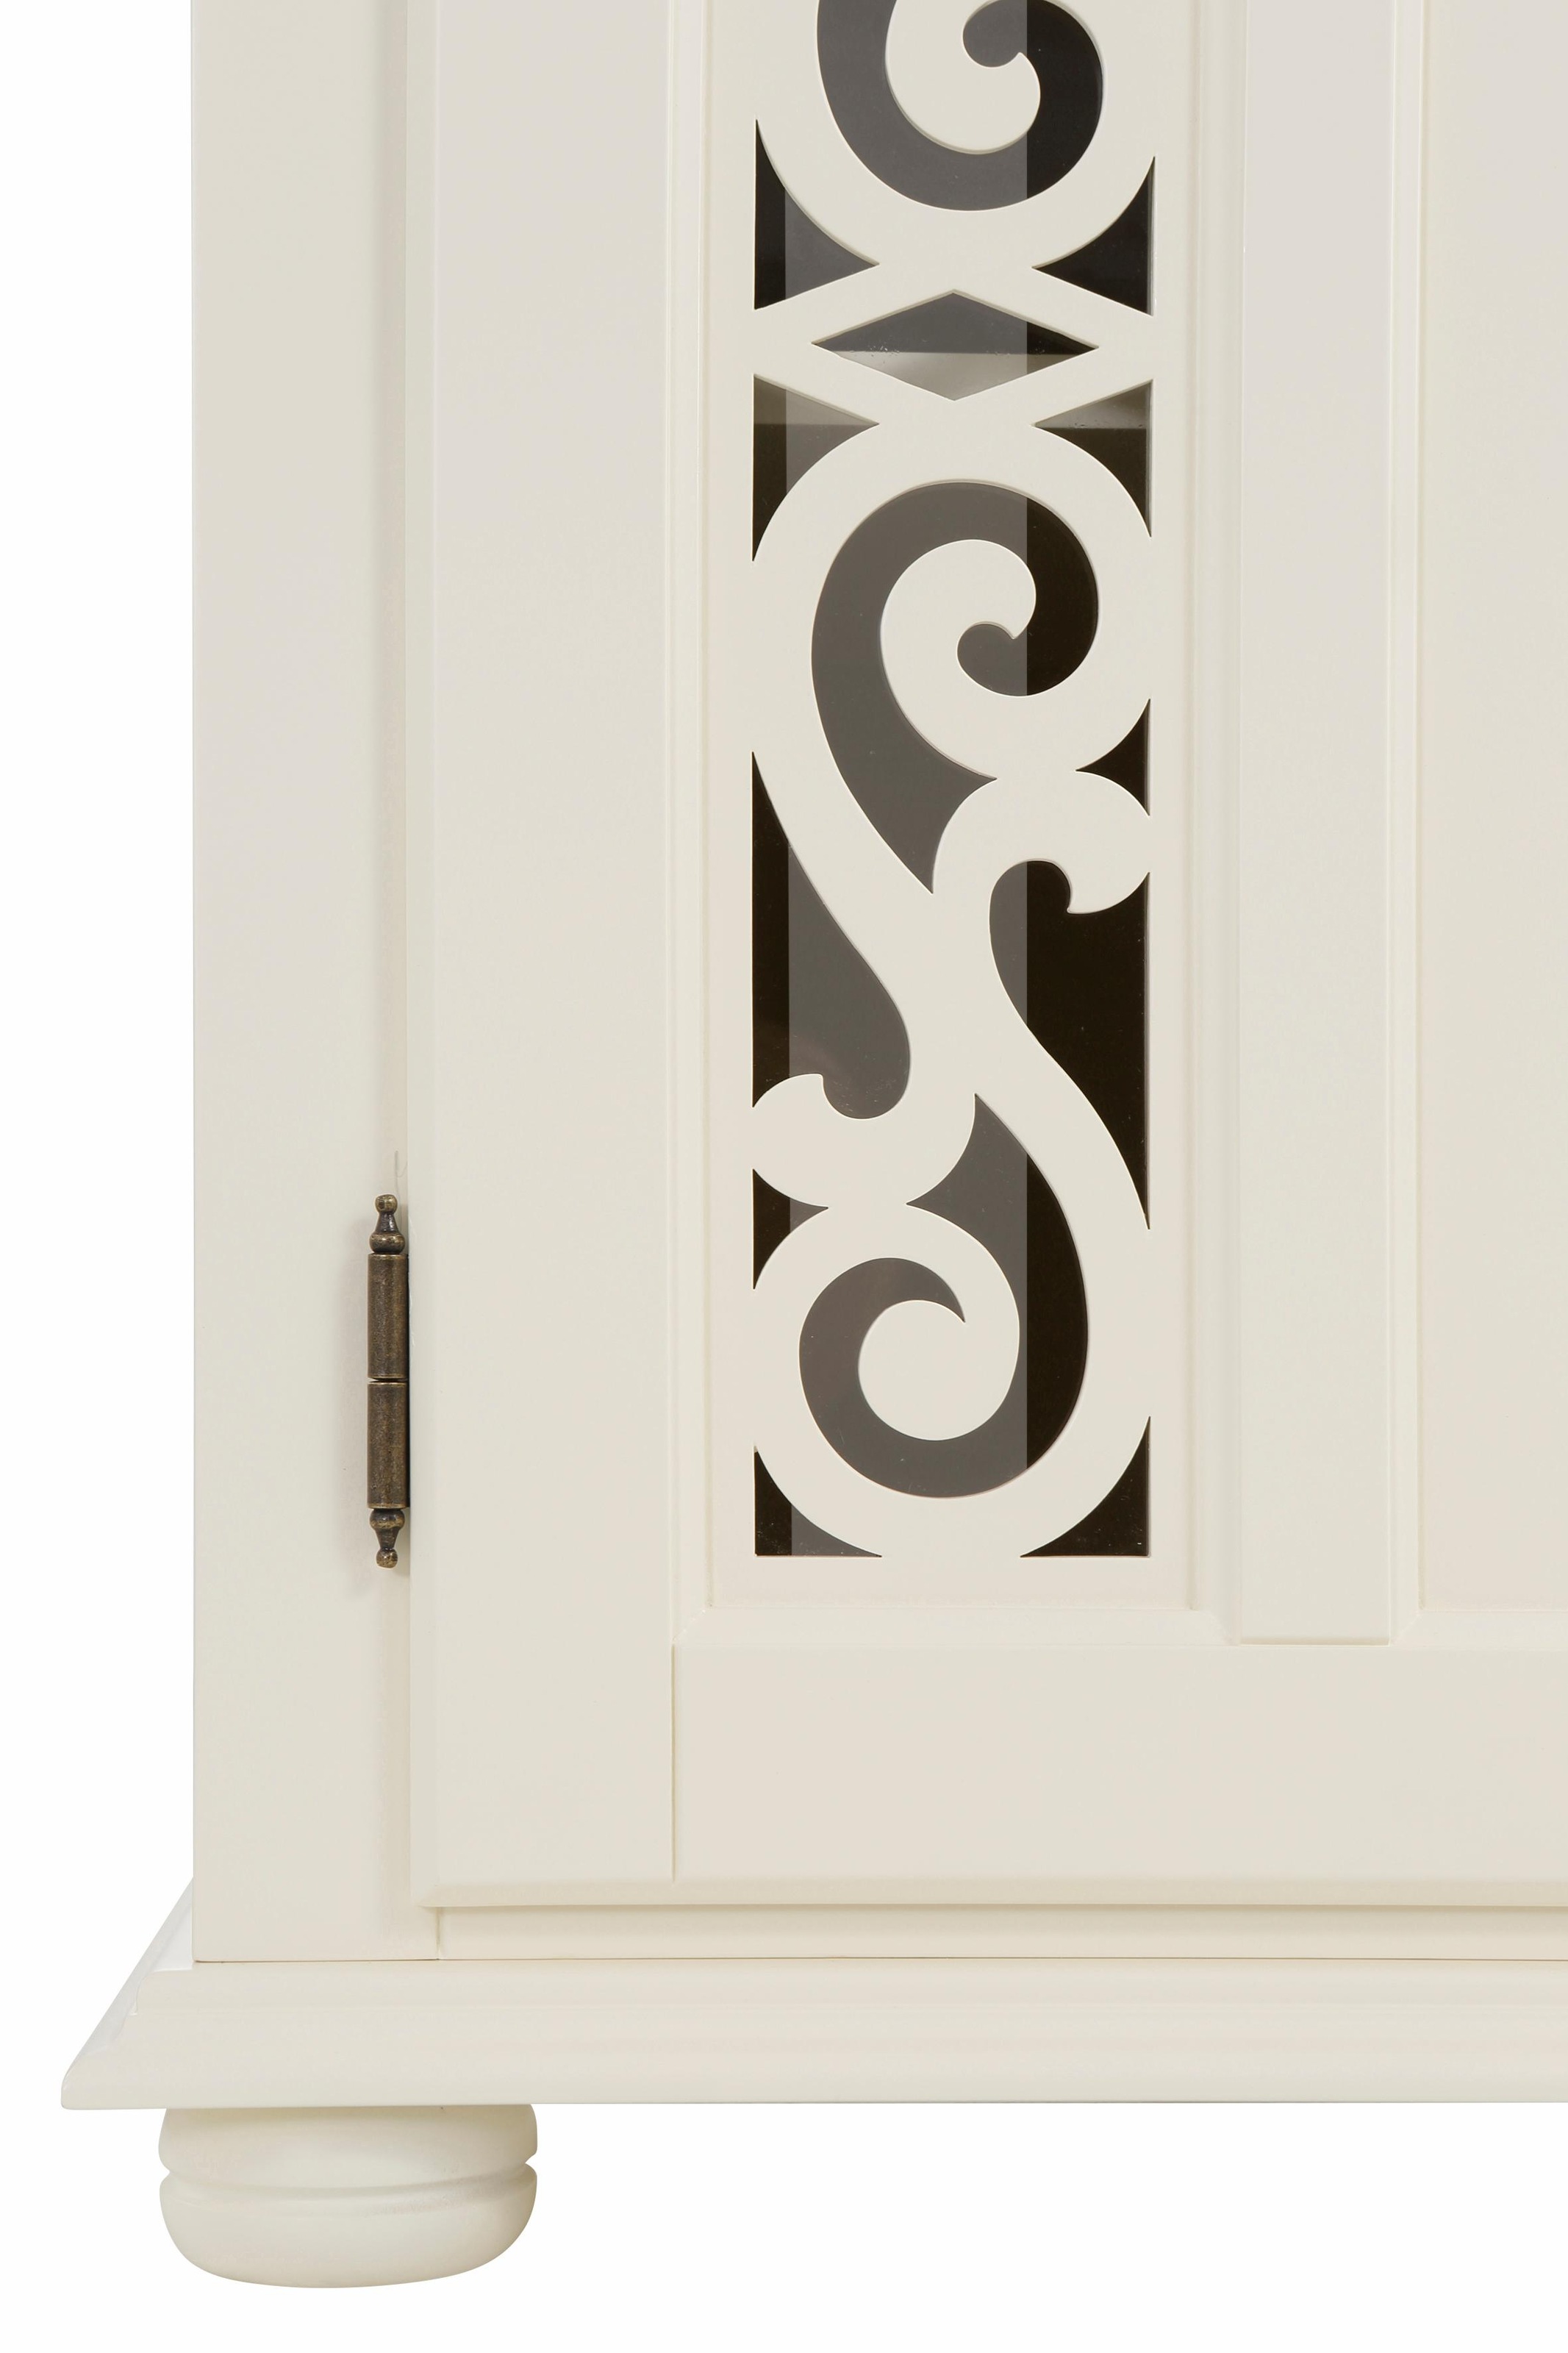 Home affaire Sideboard »Arabeske«, mit dekorativen Fräsungen auf Tür- und Schubladenfronten, Breite 171cm